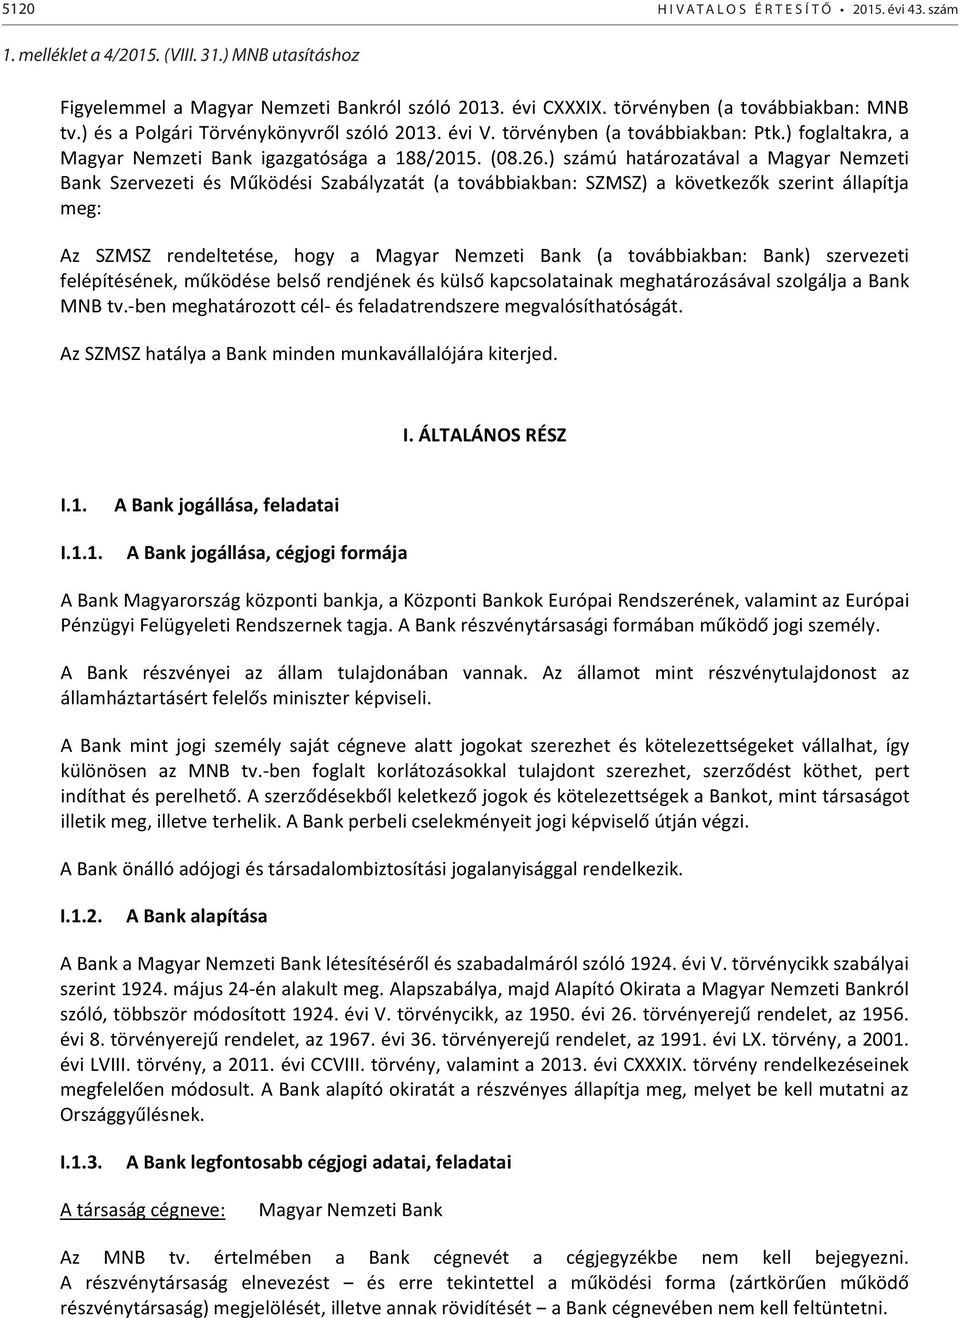 ) számú határozatával a Magyar Nemzeti Bank Szervezeti és Működési Szabályzatát (a továbbiakban: SZMSZ) a következők szerint állapítja meg: Az SZMSZ rendeltetése, hogy a Magyar Nemzeti Bank (a